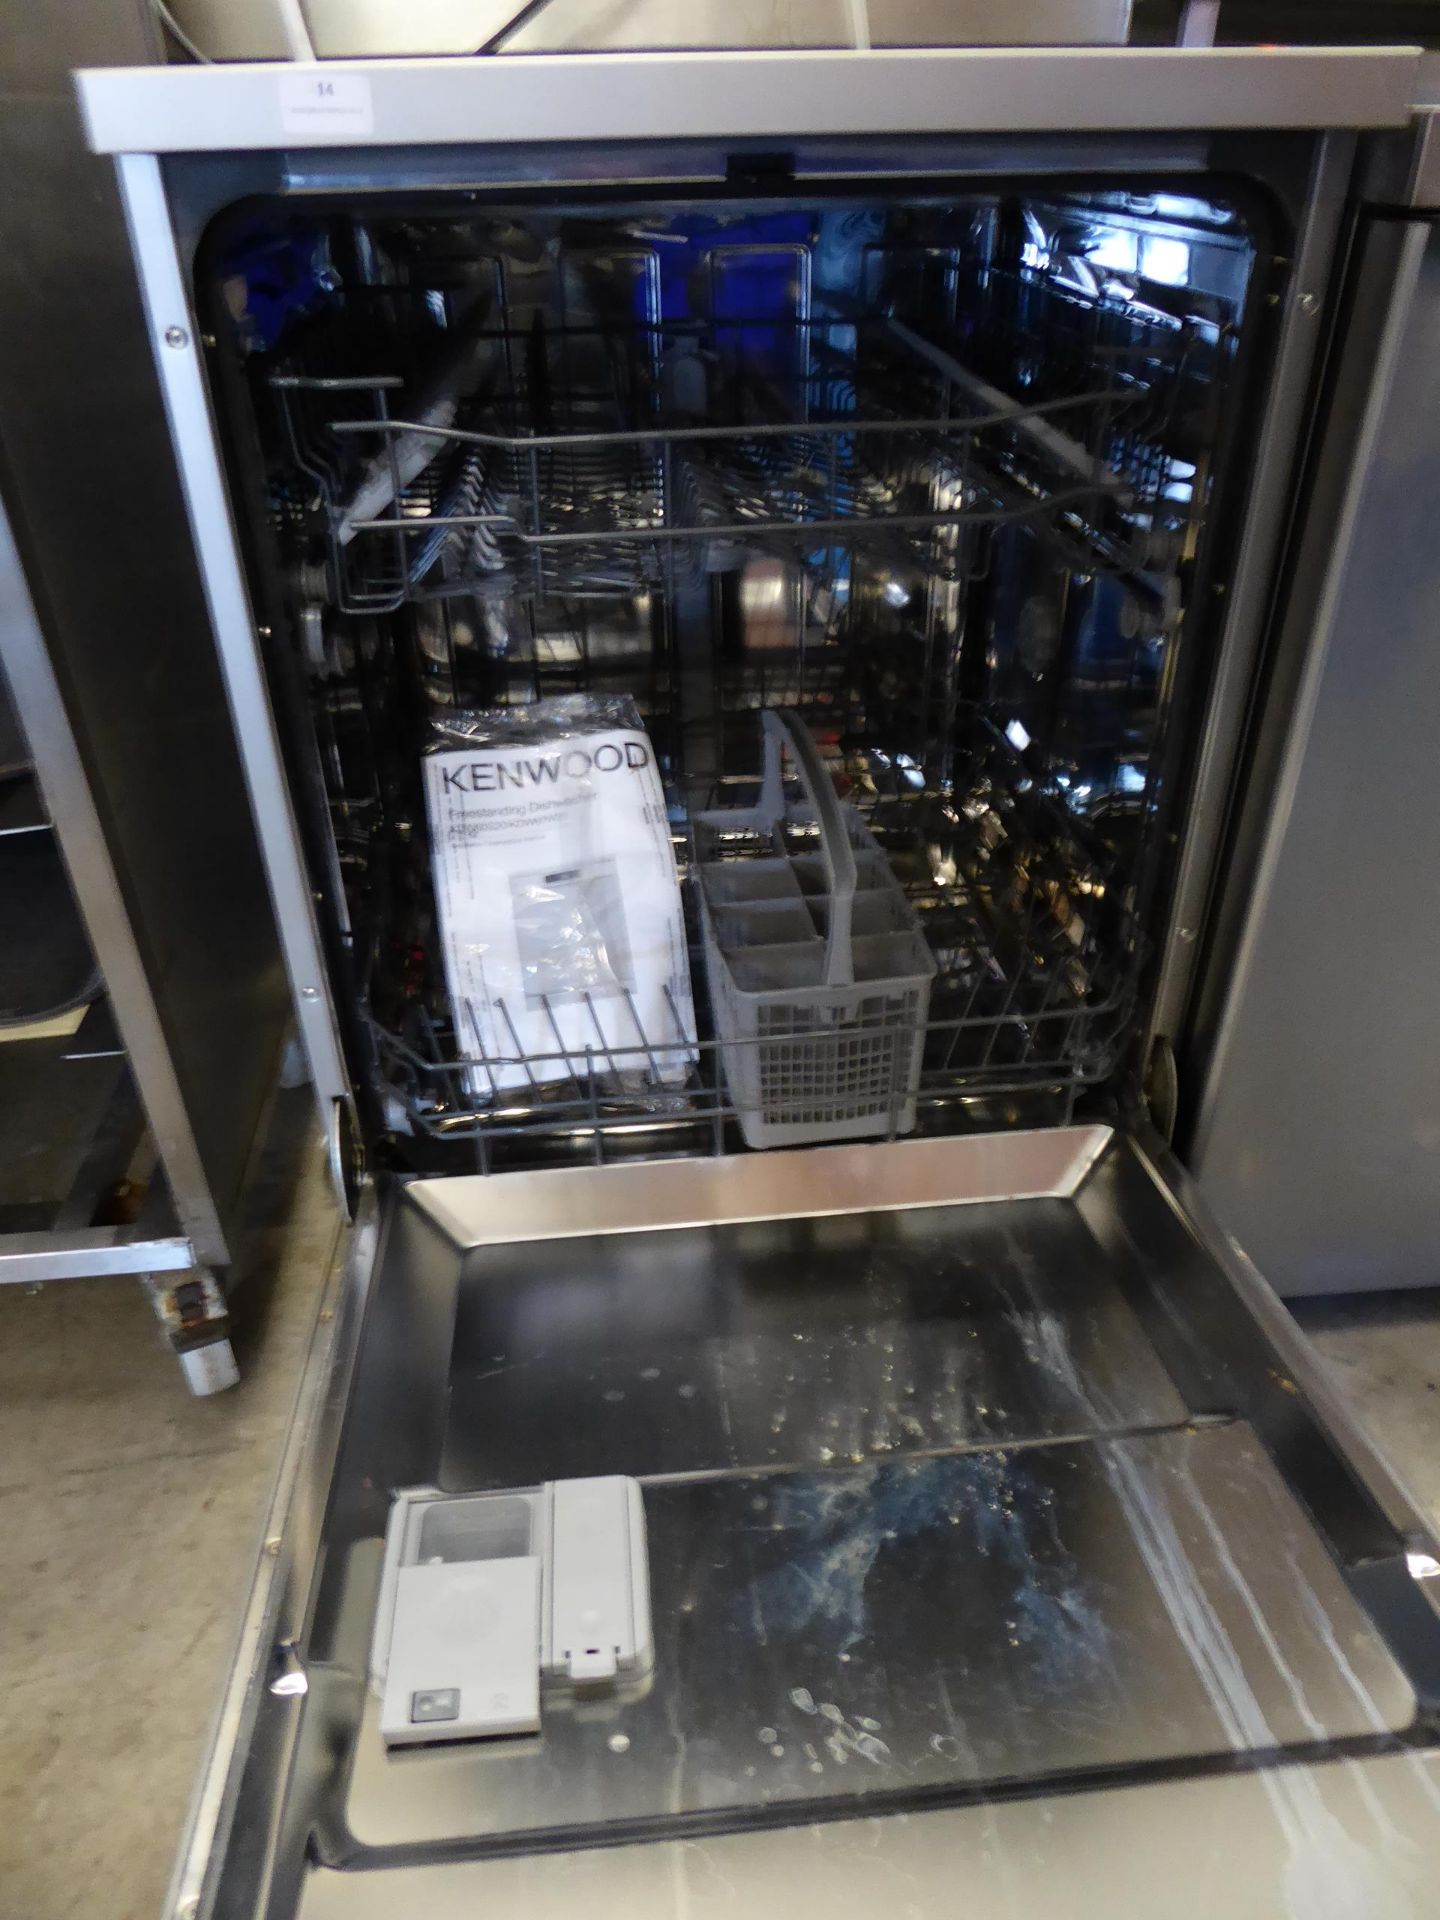 * Kenwood domestic dishwasher model kdw60 S20 - Image 3 of 3